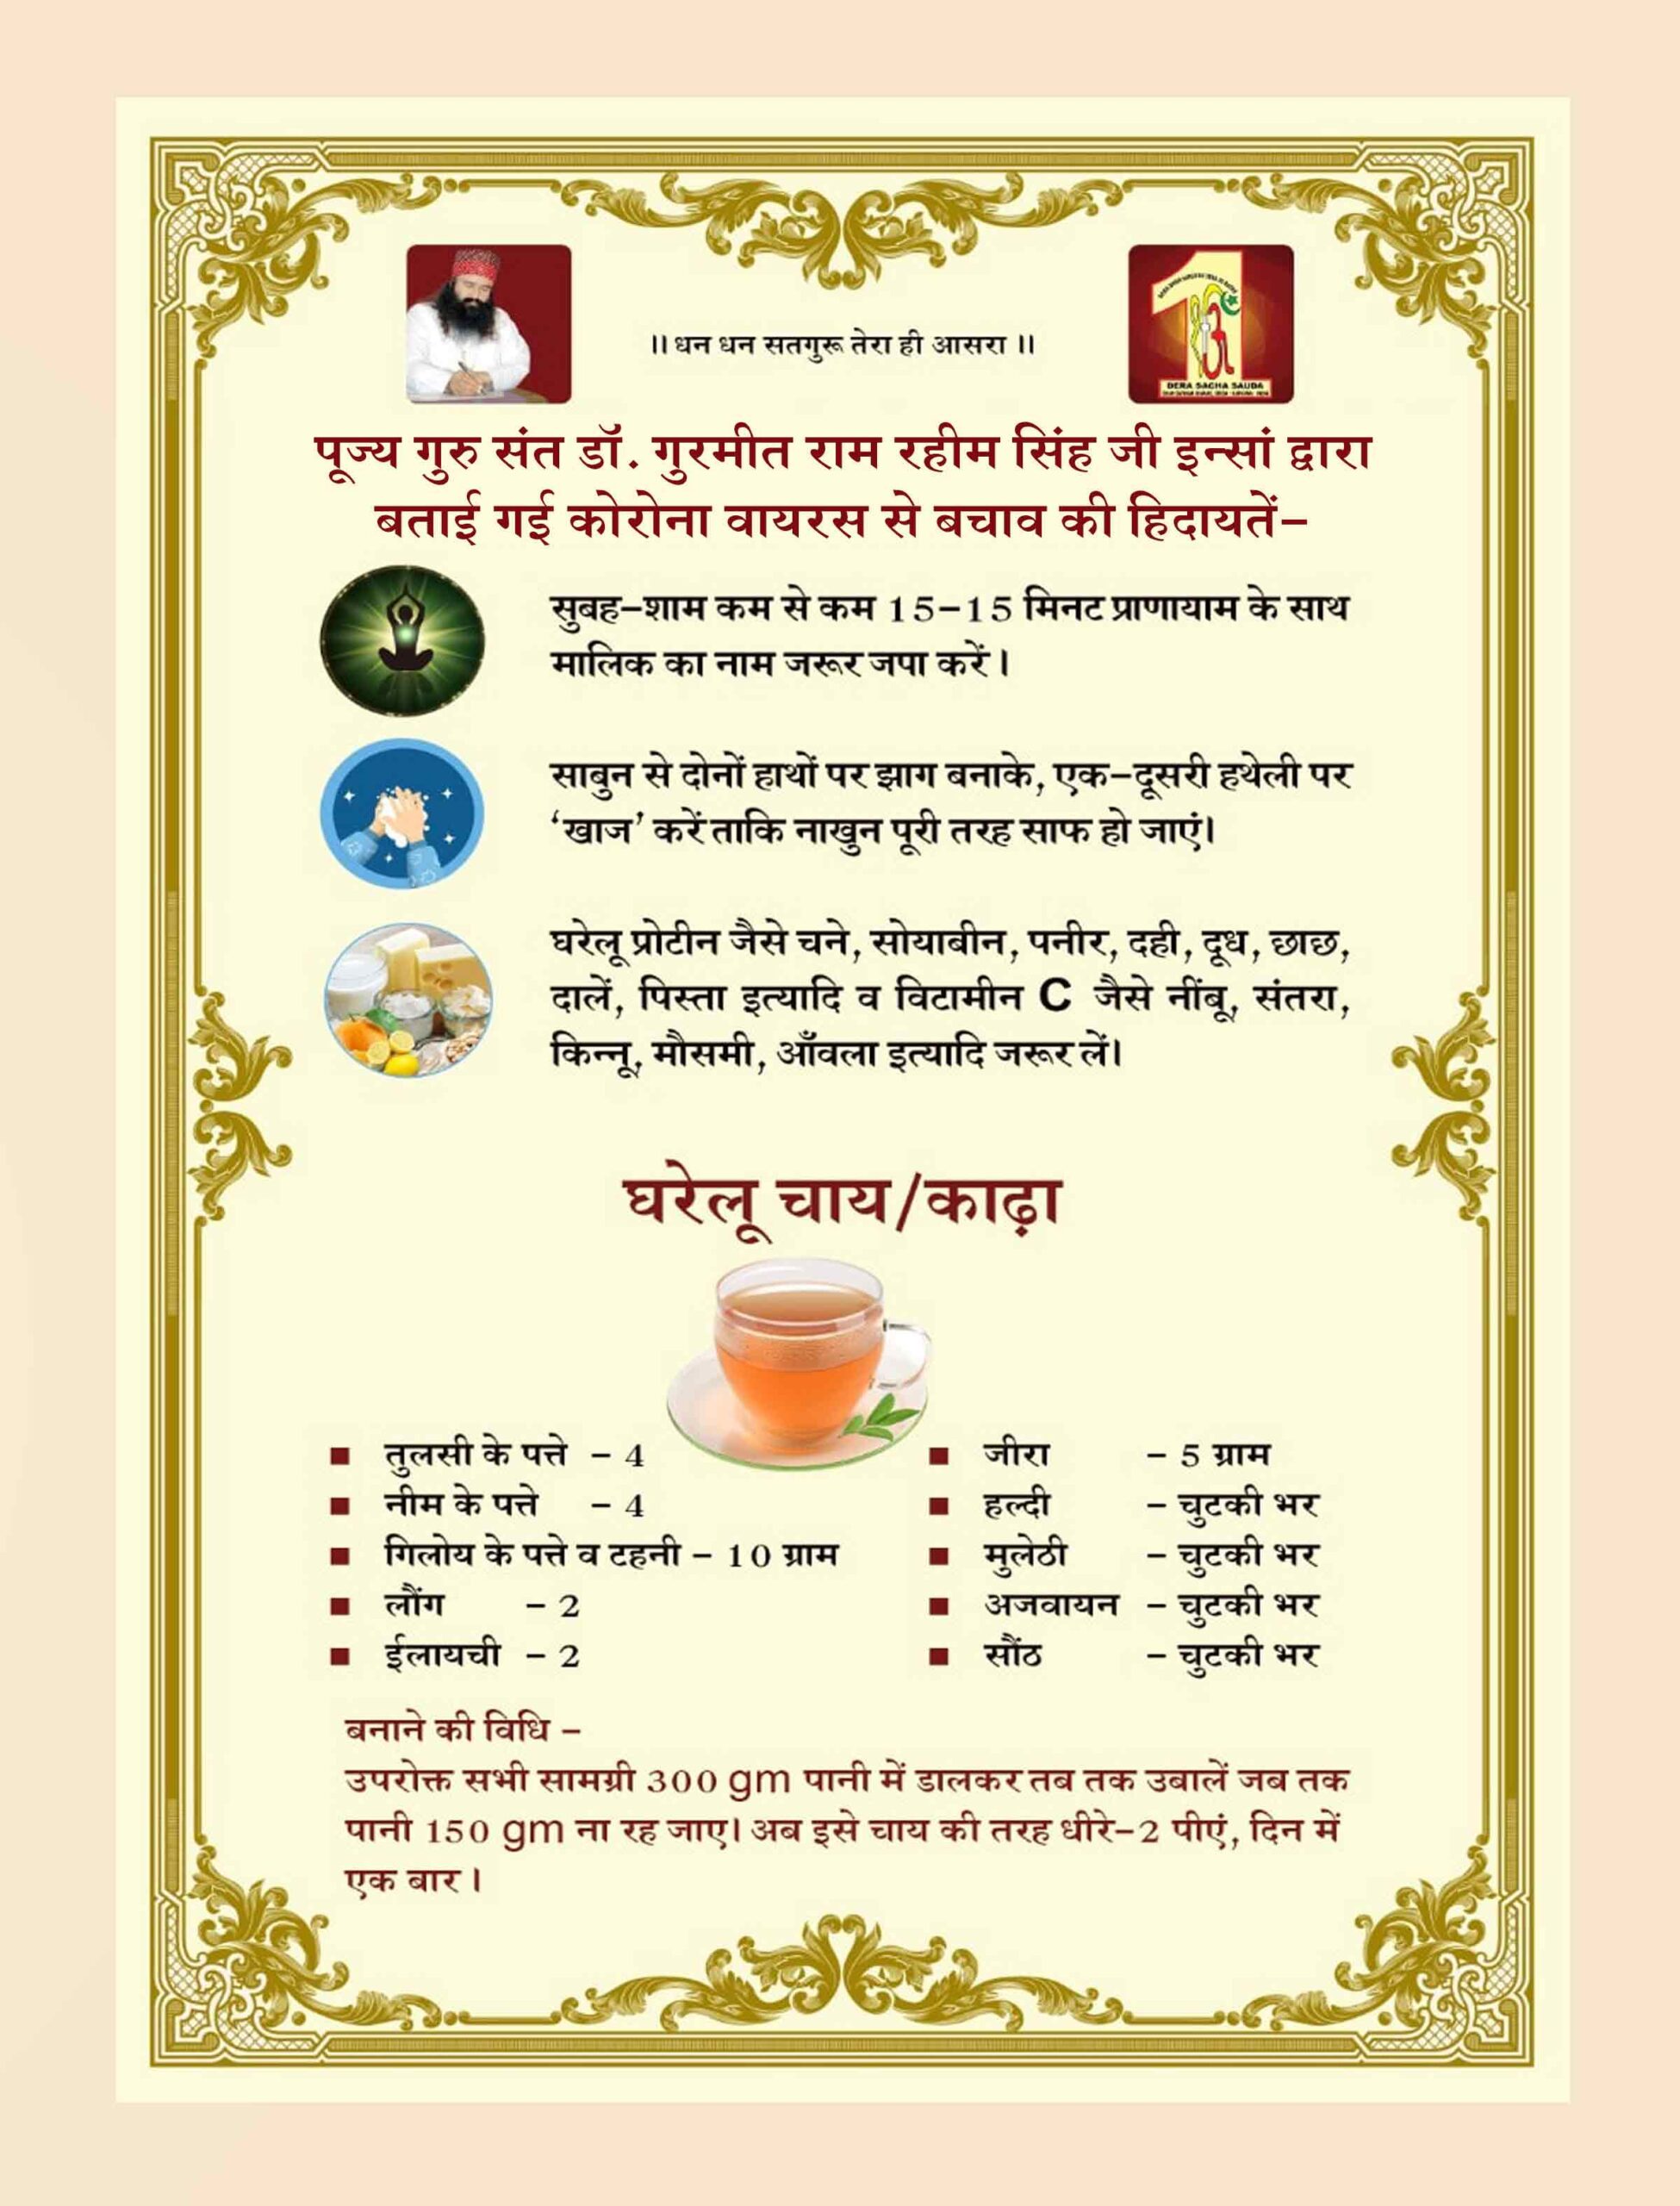 Saint Dr. Gurmeet Ram Rahim Singh Ji Insan's Advice on Corona Precautions - Sachi Shiksha Hindi